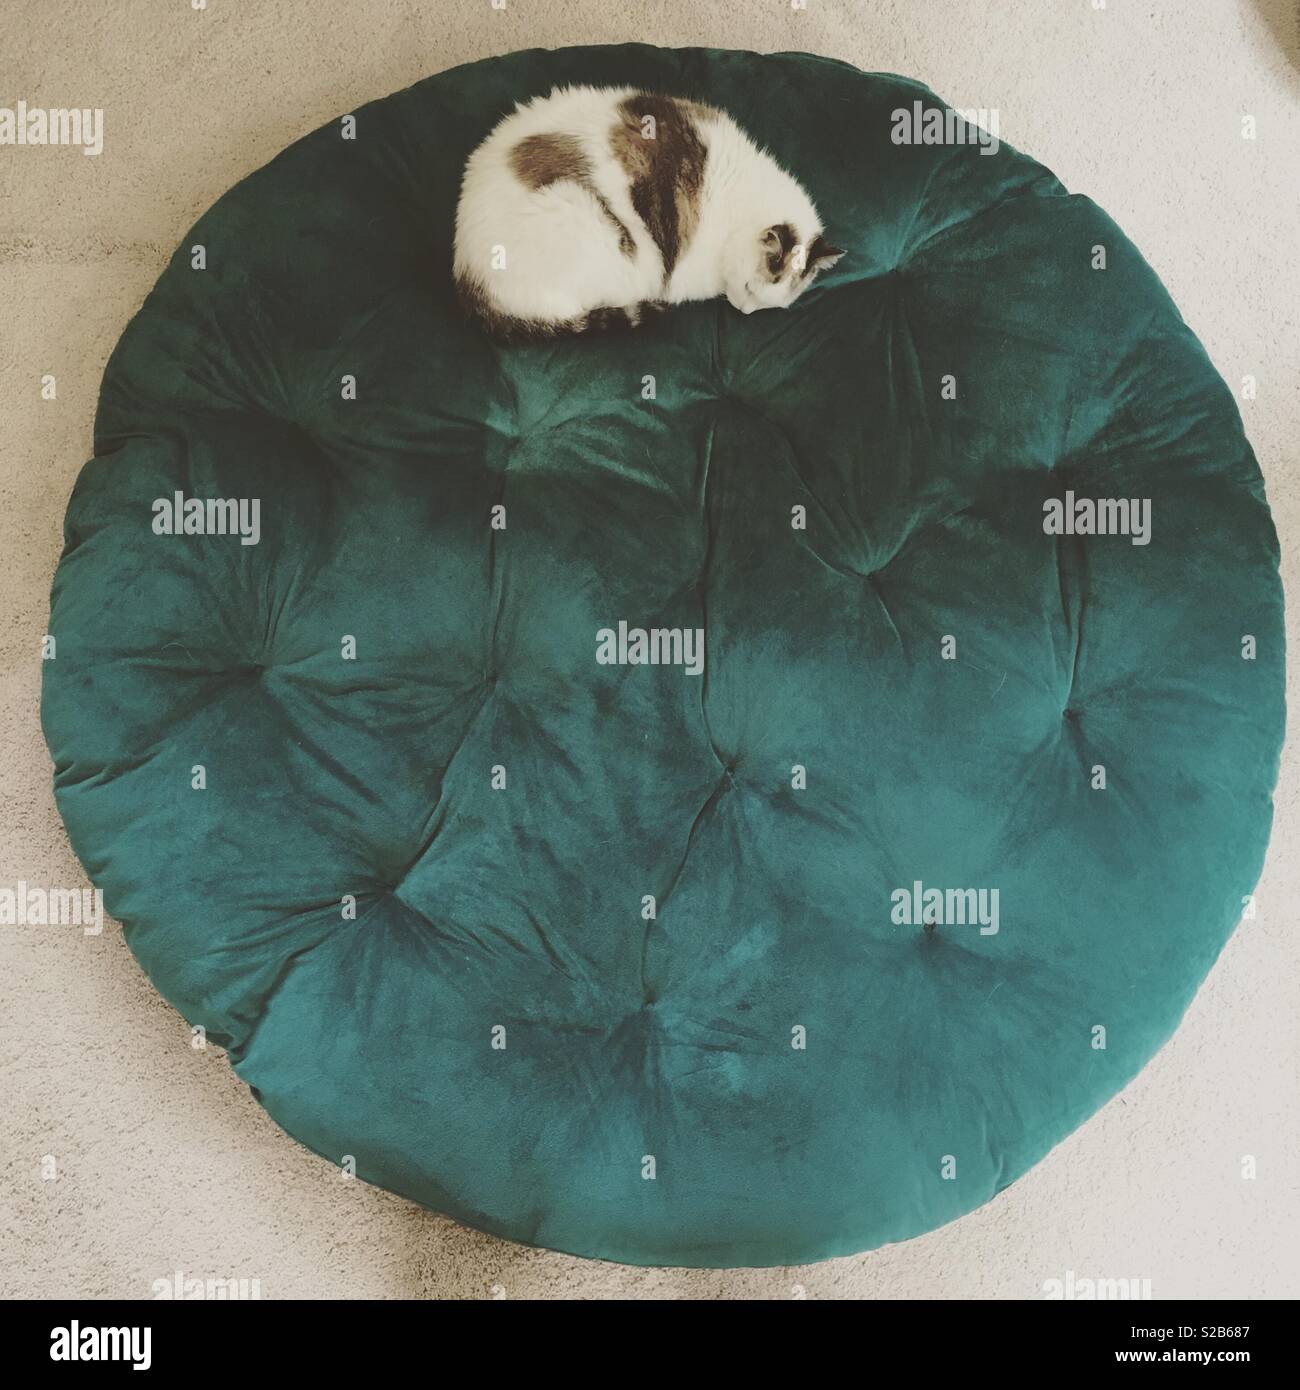 Un chat dort sur un coussin circulaire. Banque D'Images